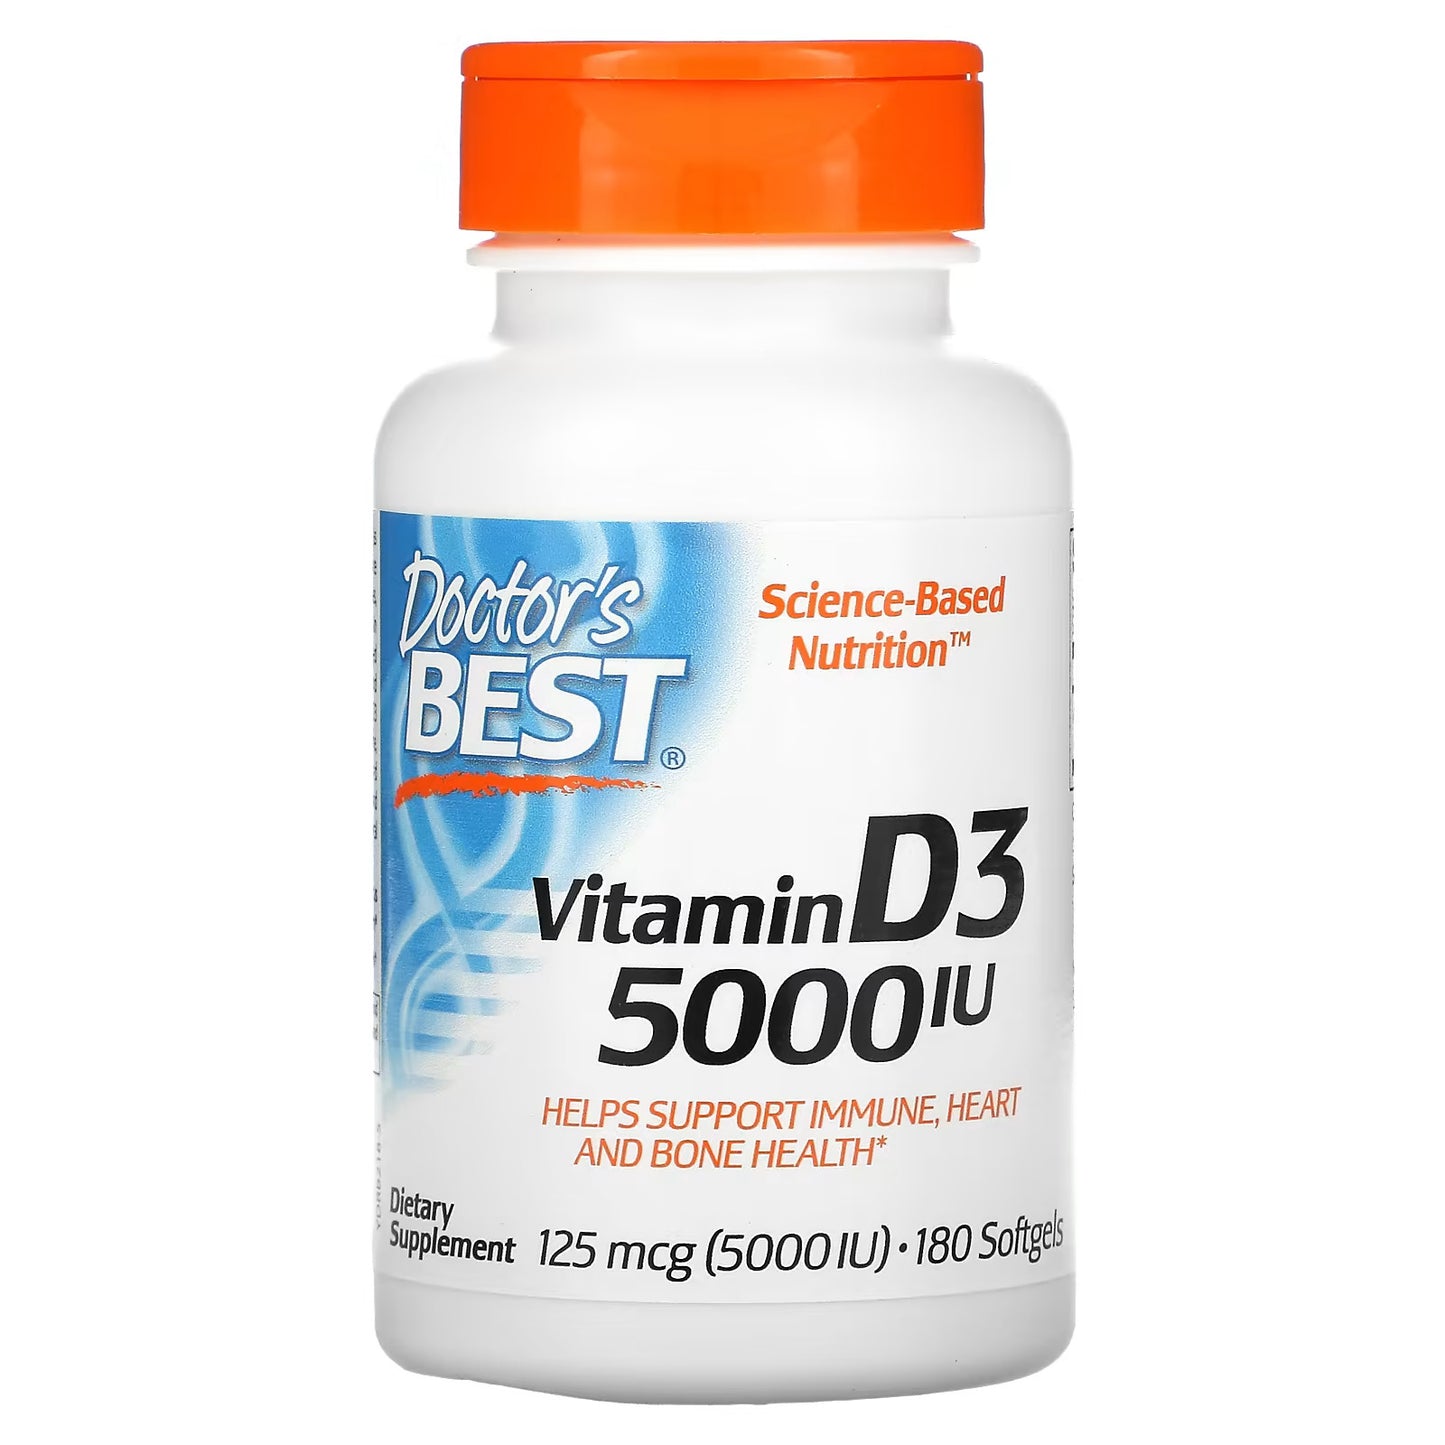 Doctor's Best Vitamin D3 - 5000IU 180 Softgels